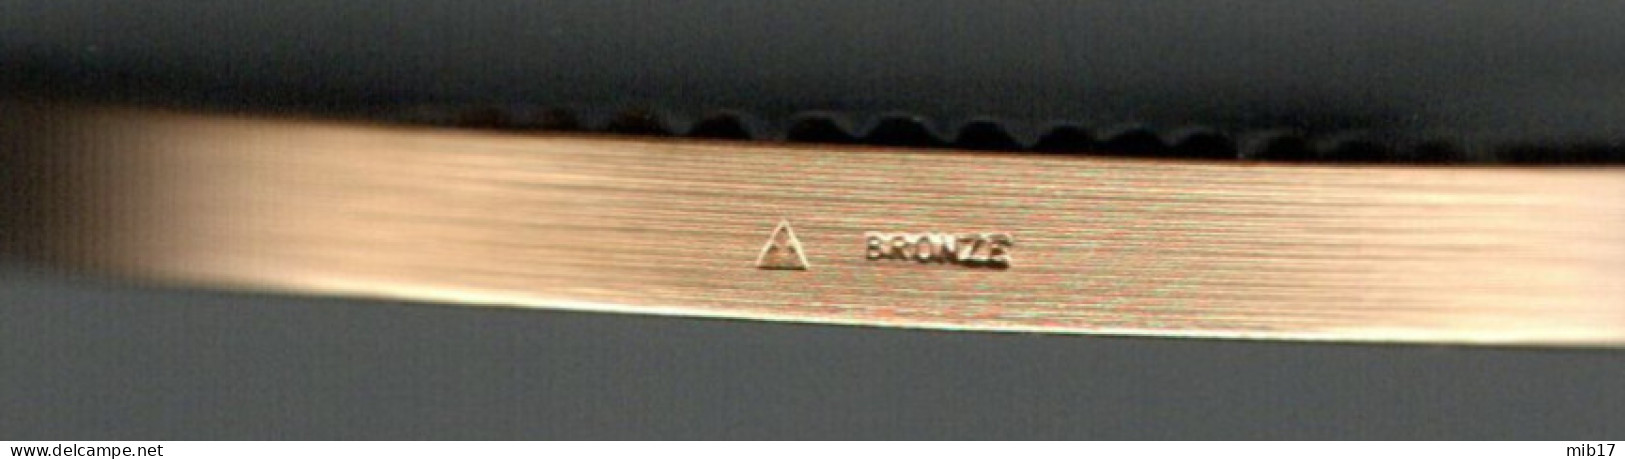 Médaille Du Travail En Bronze ARTHUS BERTRAND - Industrie Par Le Graveur J-P ROCH - Diamètre 57 Mm - Profesionales / De Sociedad